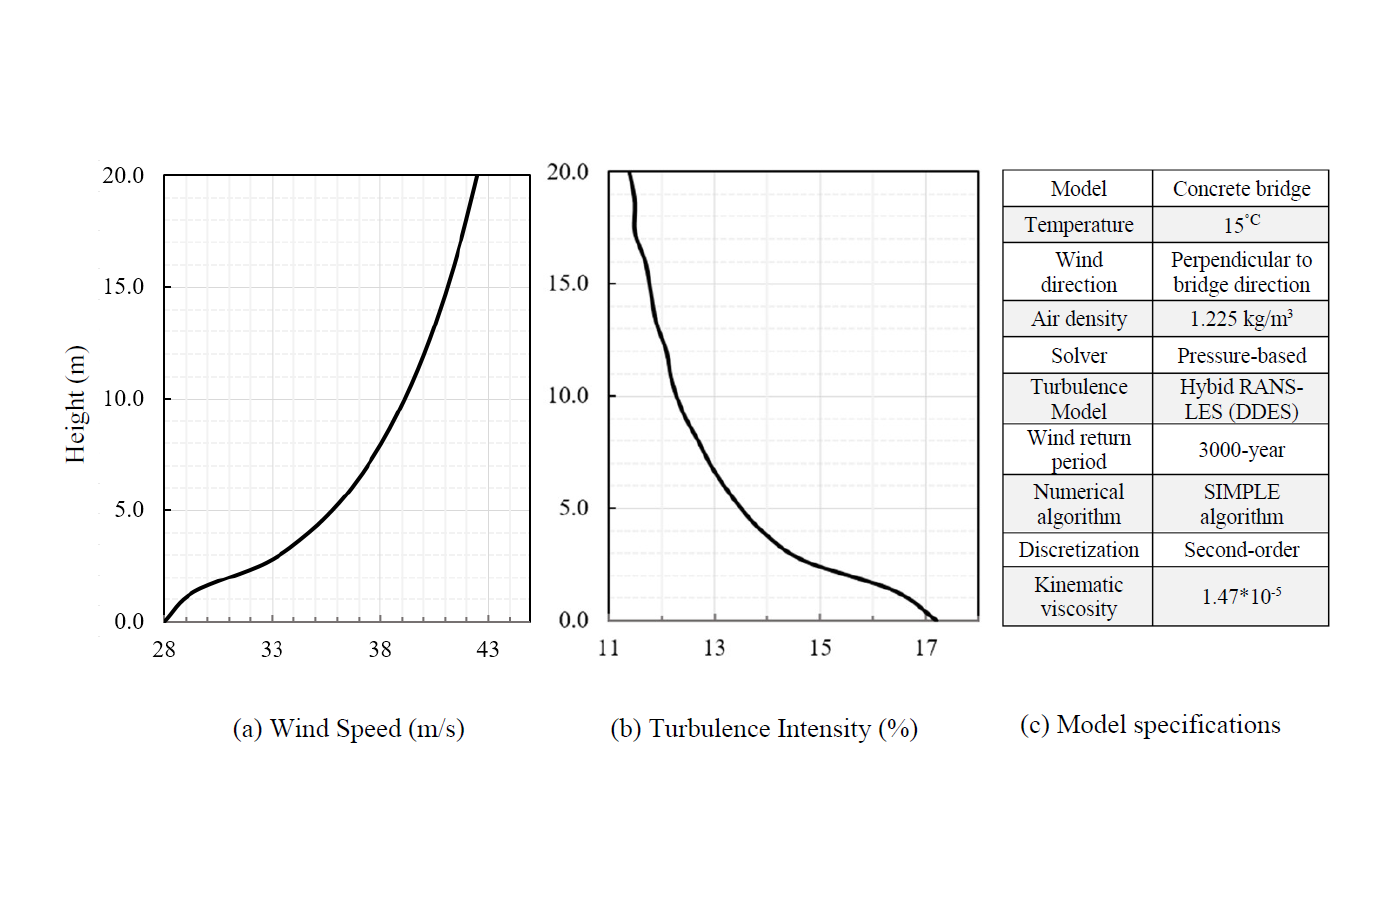 Рис. 2. Расчетное значение для информации о 3000-летнем периоде повторяемости: (a) профиль скорости ветра и (b) интенсивности турбулентности, и (c) технические характеристики модели